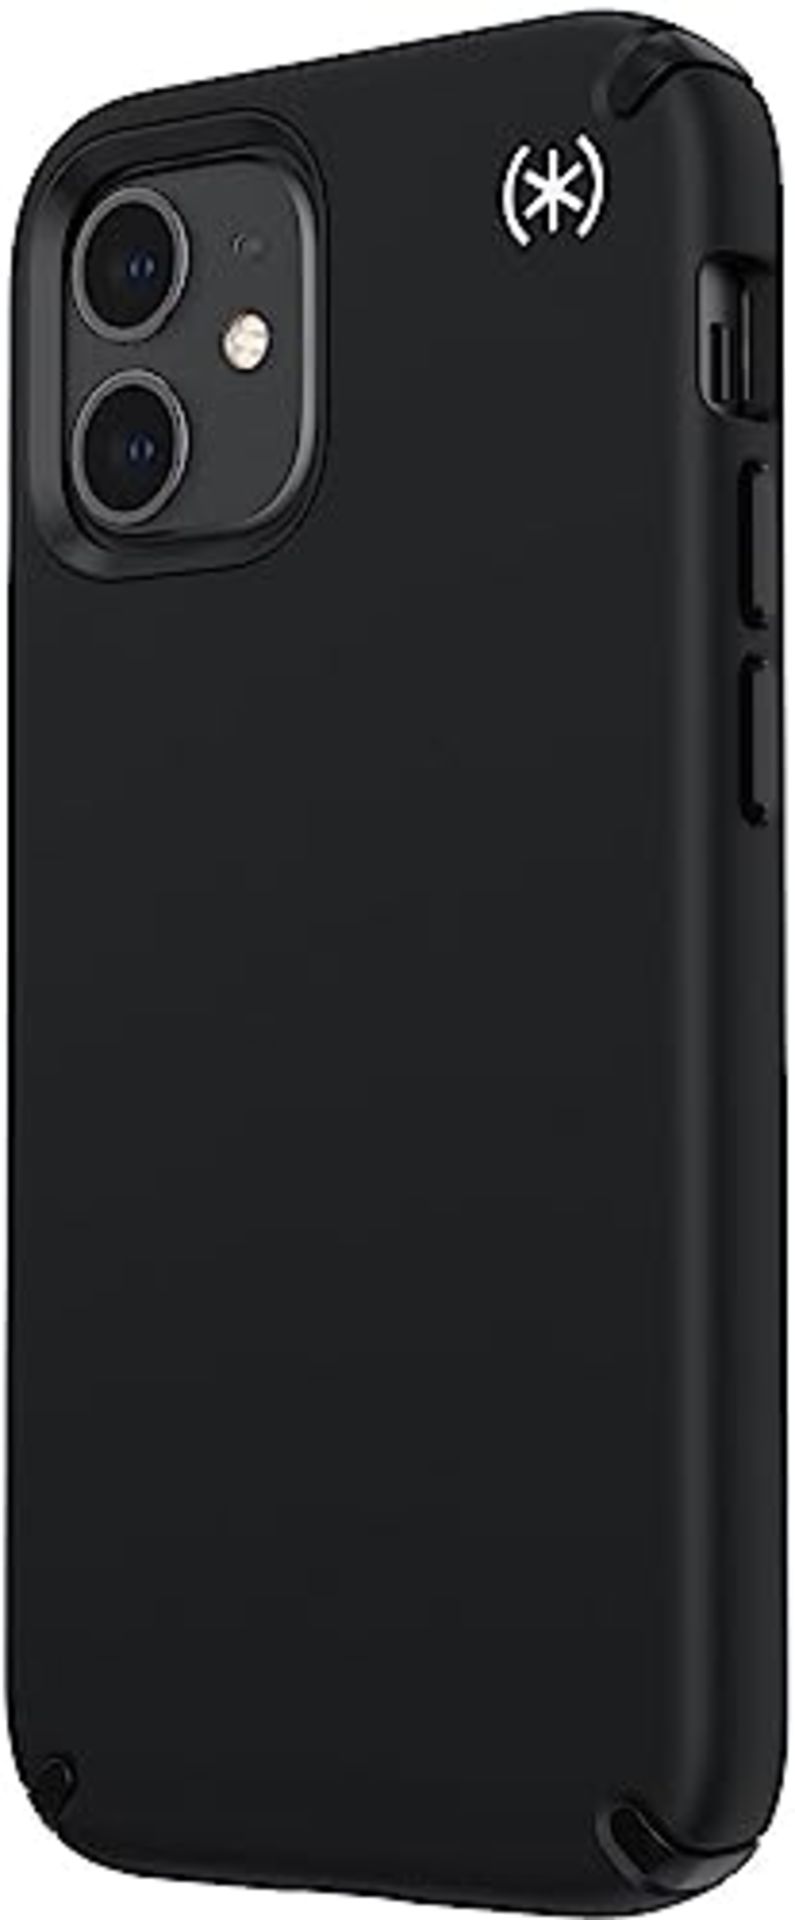 Speck Products Presidio Pro Black / Black /White iPhone 12 Mini